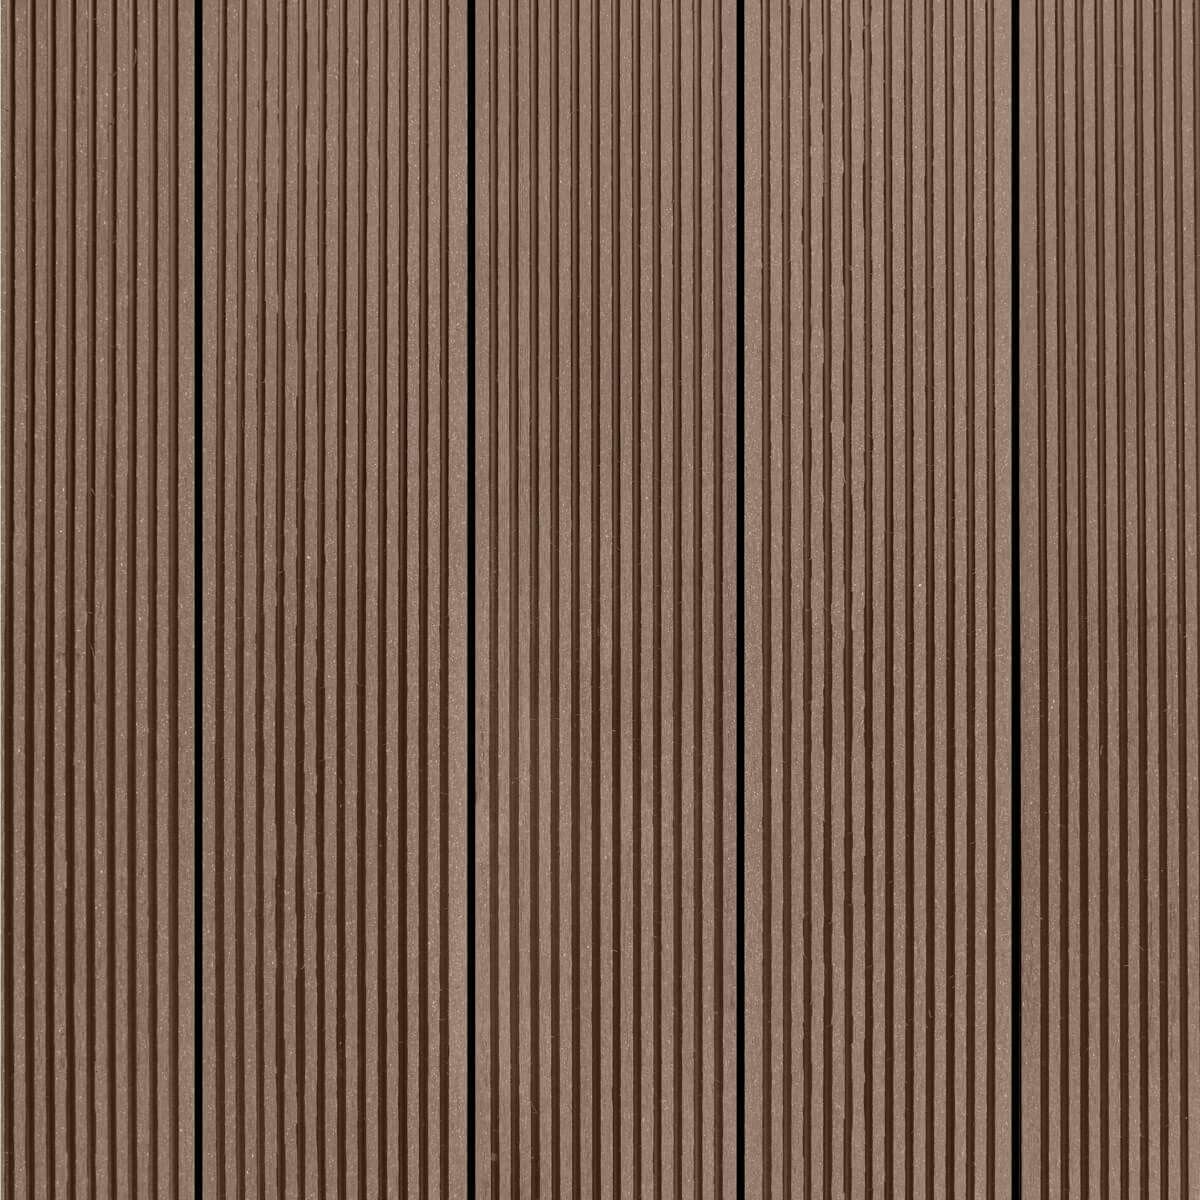 Харвекс Нова террасная доска ДПК 3000х152х28мм шоколад (0,456 кв. м.) / HARVEX Nova террасная доска ДПК односторонняя 3000х152х28мм шоколад (0,456 кв. м